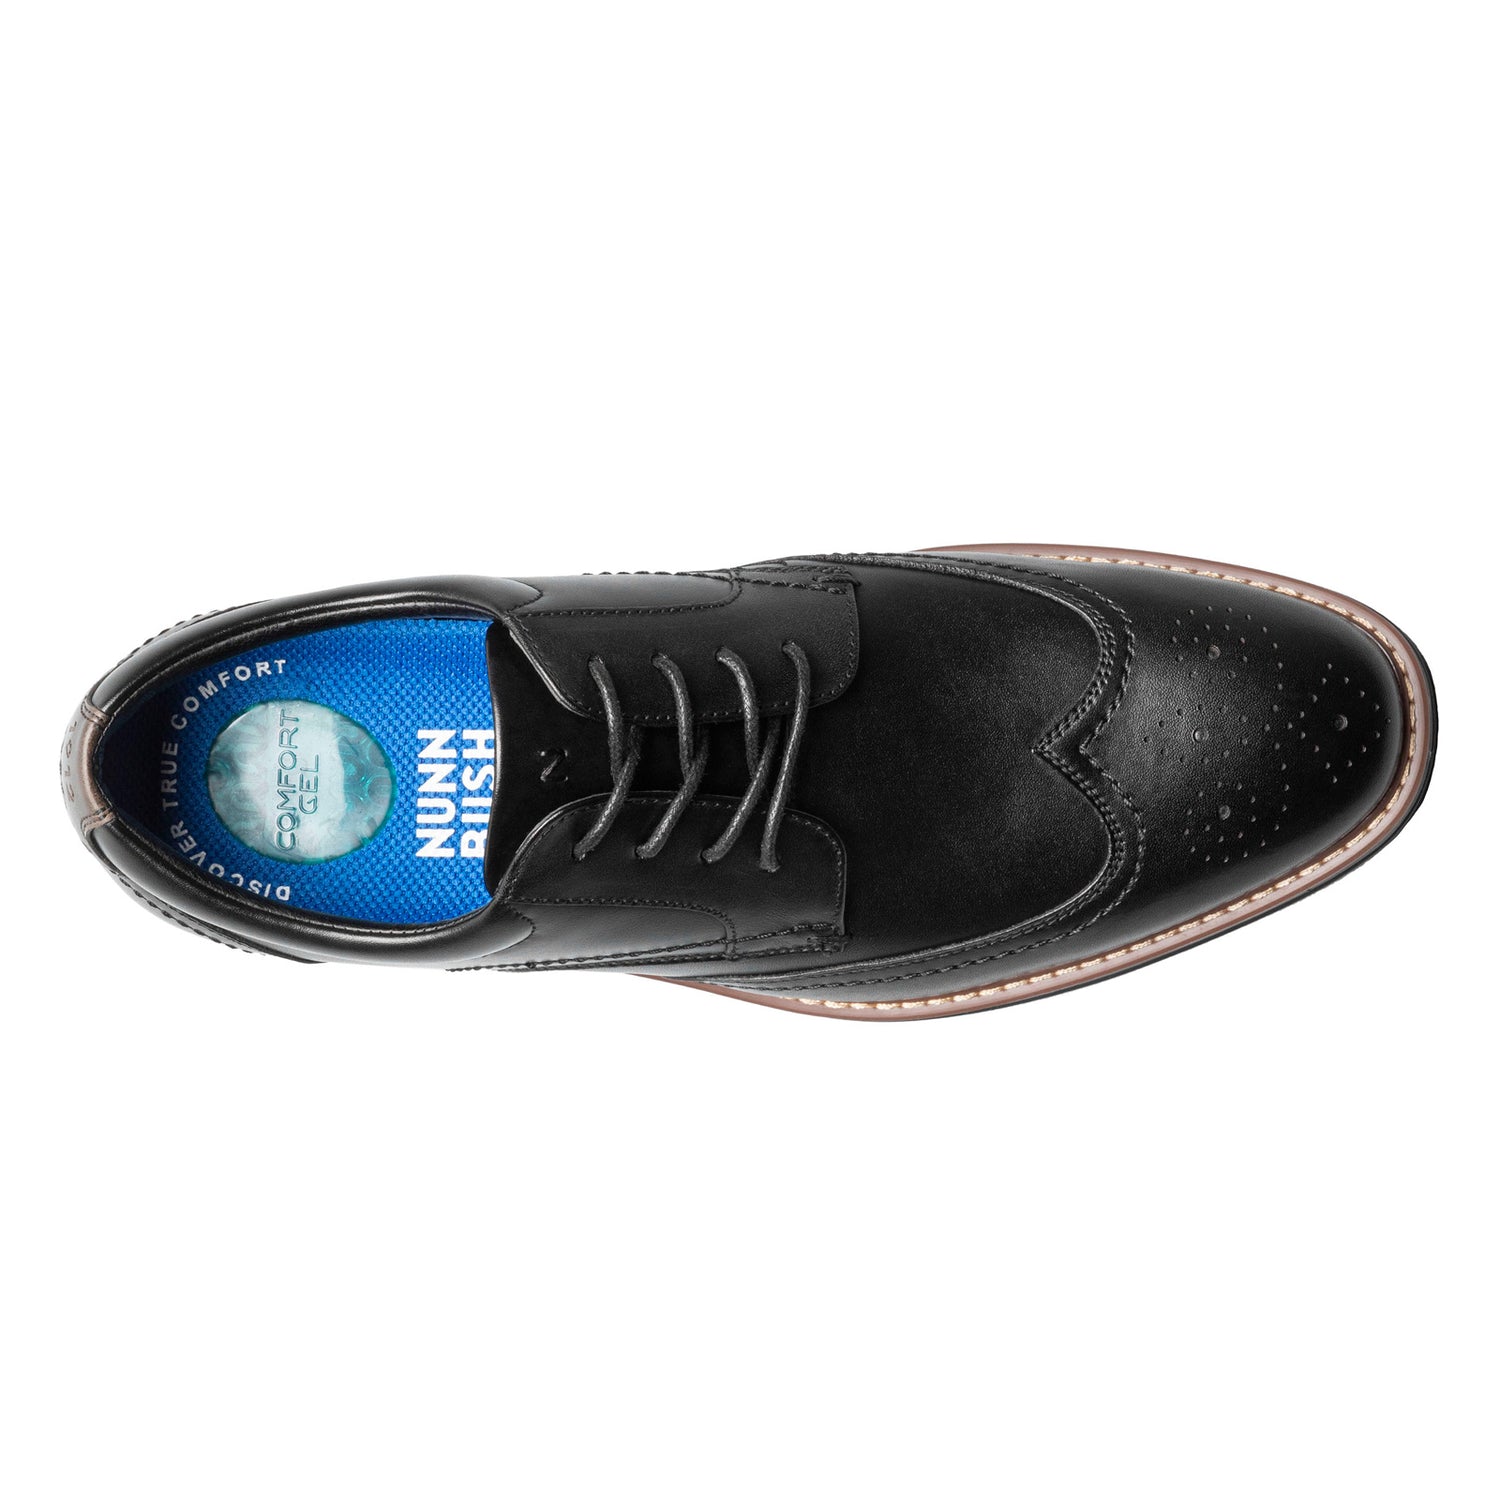 Peltz Shoes  Men's Nunn Bush Centro Flex Wingtip Oxford BLACK 84983-001